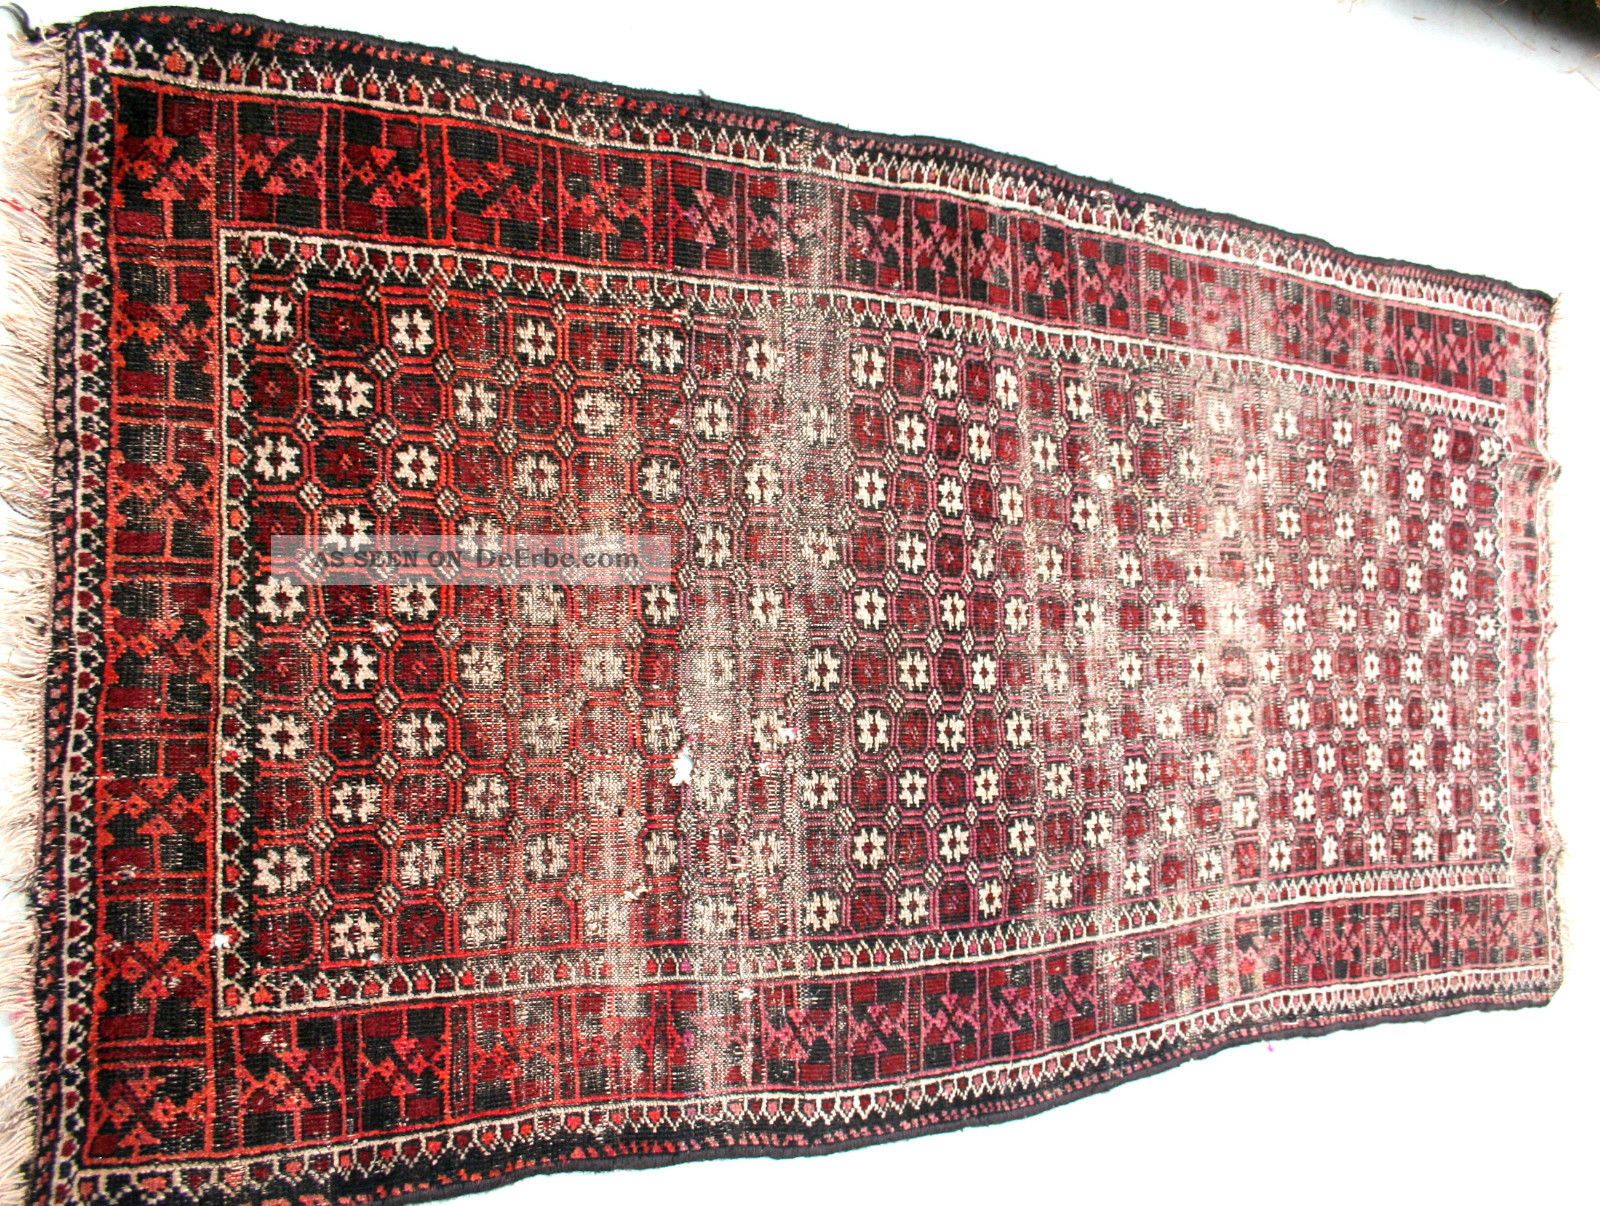 Belusch Nomadenteppich Antikes Fragment Um 1900 Sammlerteppich Handgeknüpft Teppiche & Flachgewebe Bild